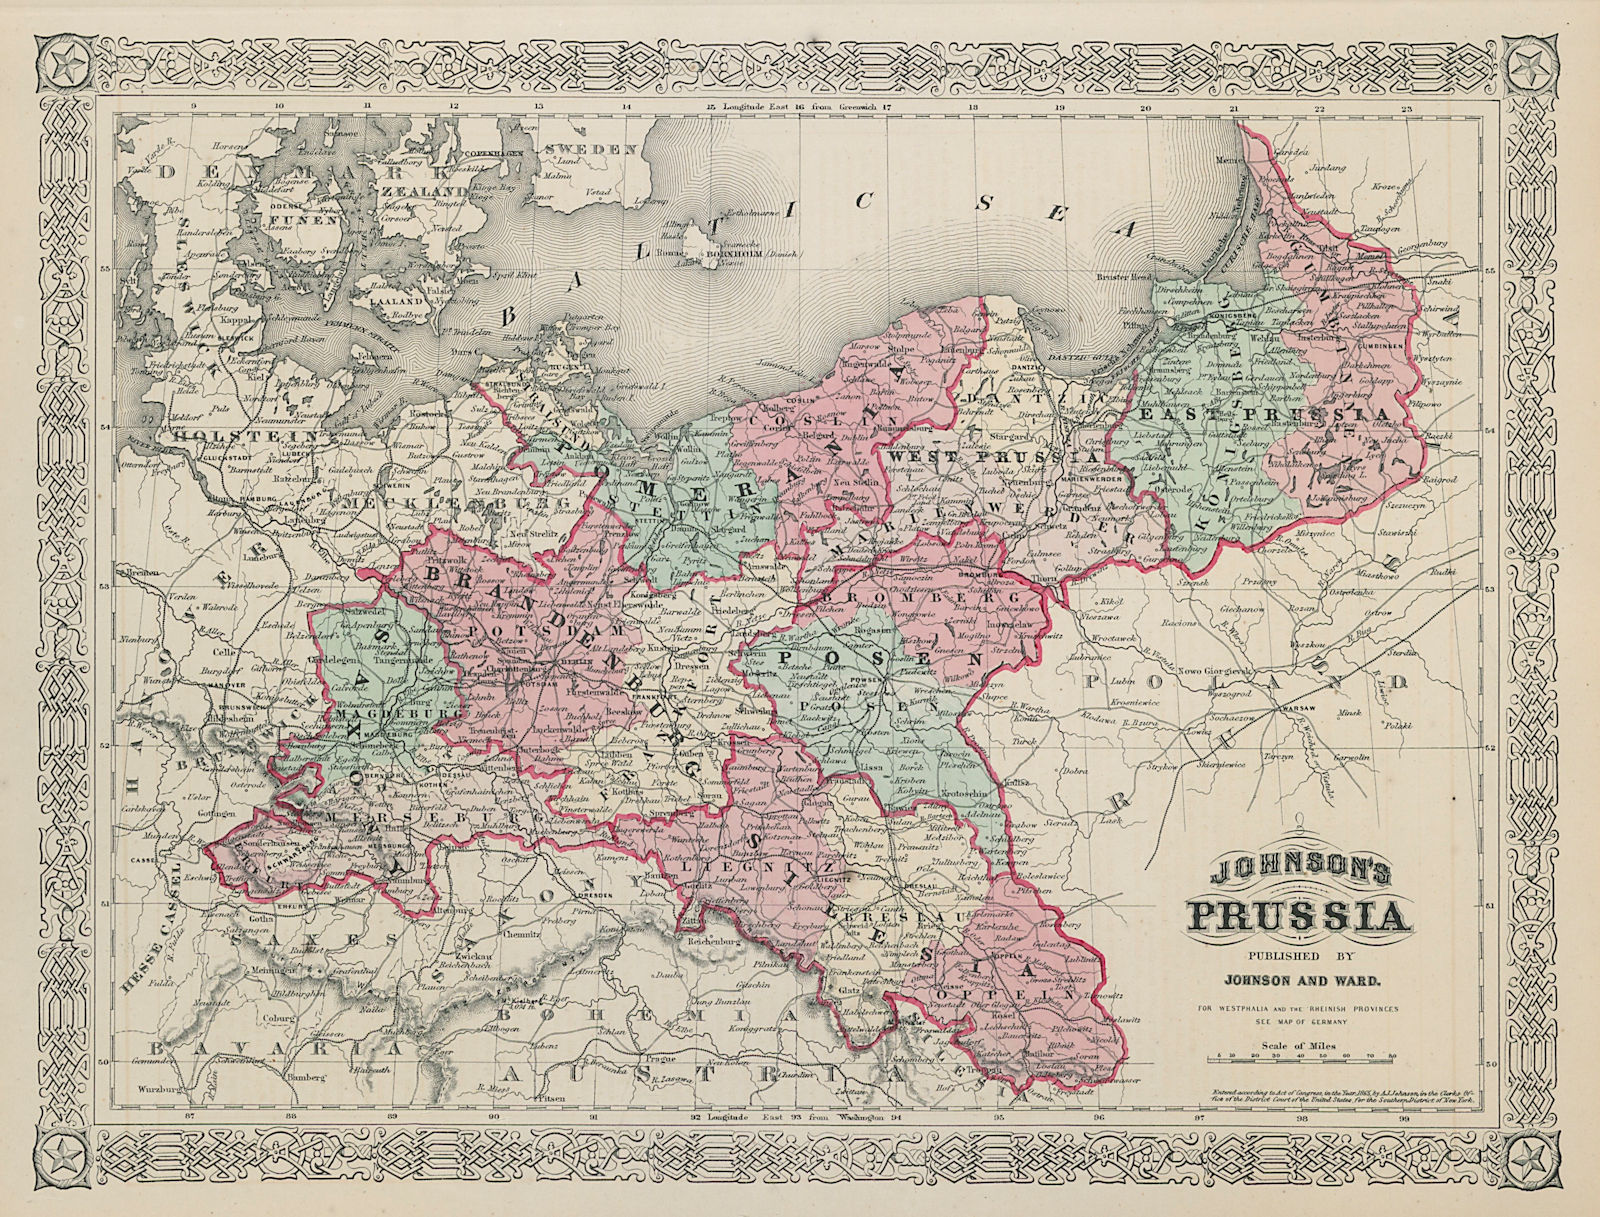 Associate Product Johnson's Prussia. Saxony Silesia Brandenburg Pomerania Posen Poland 1865 map